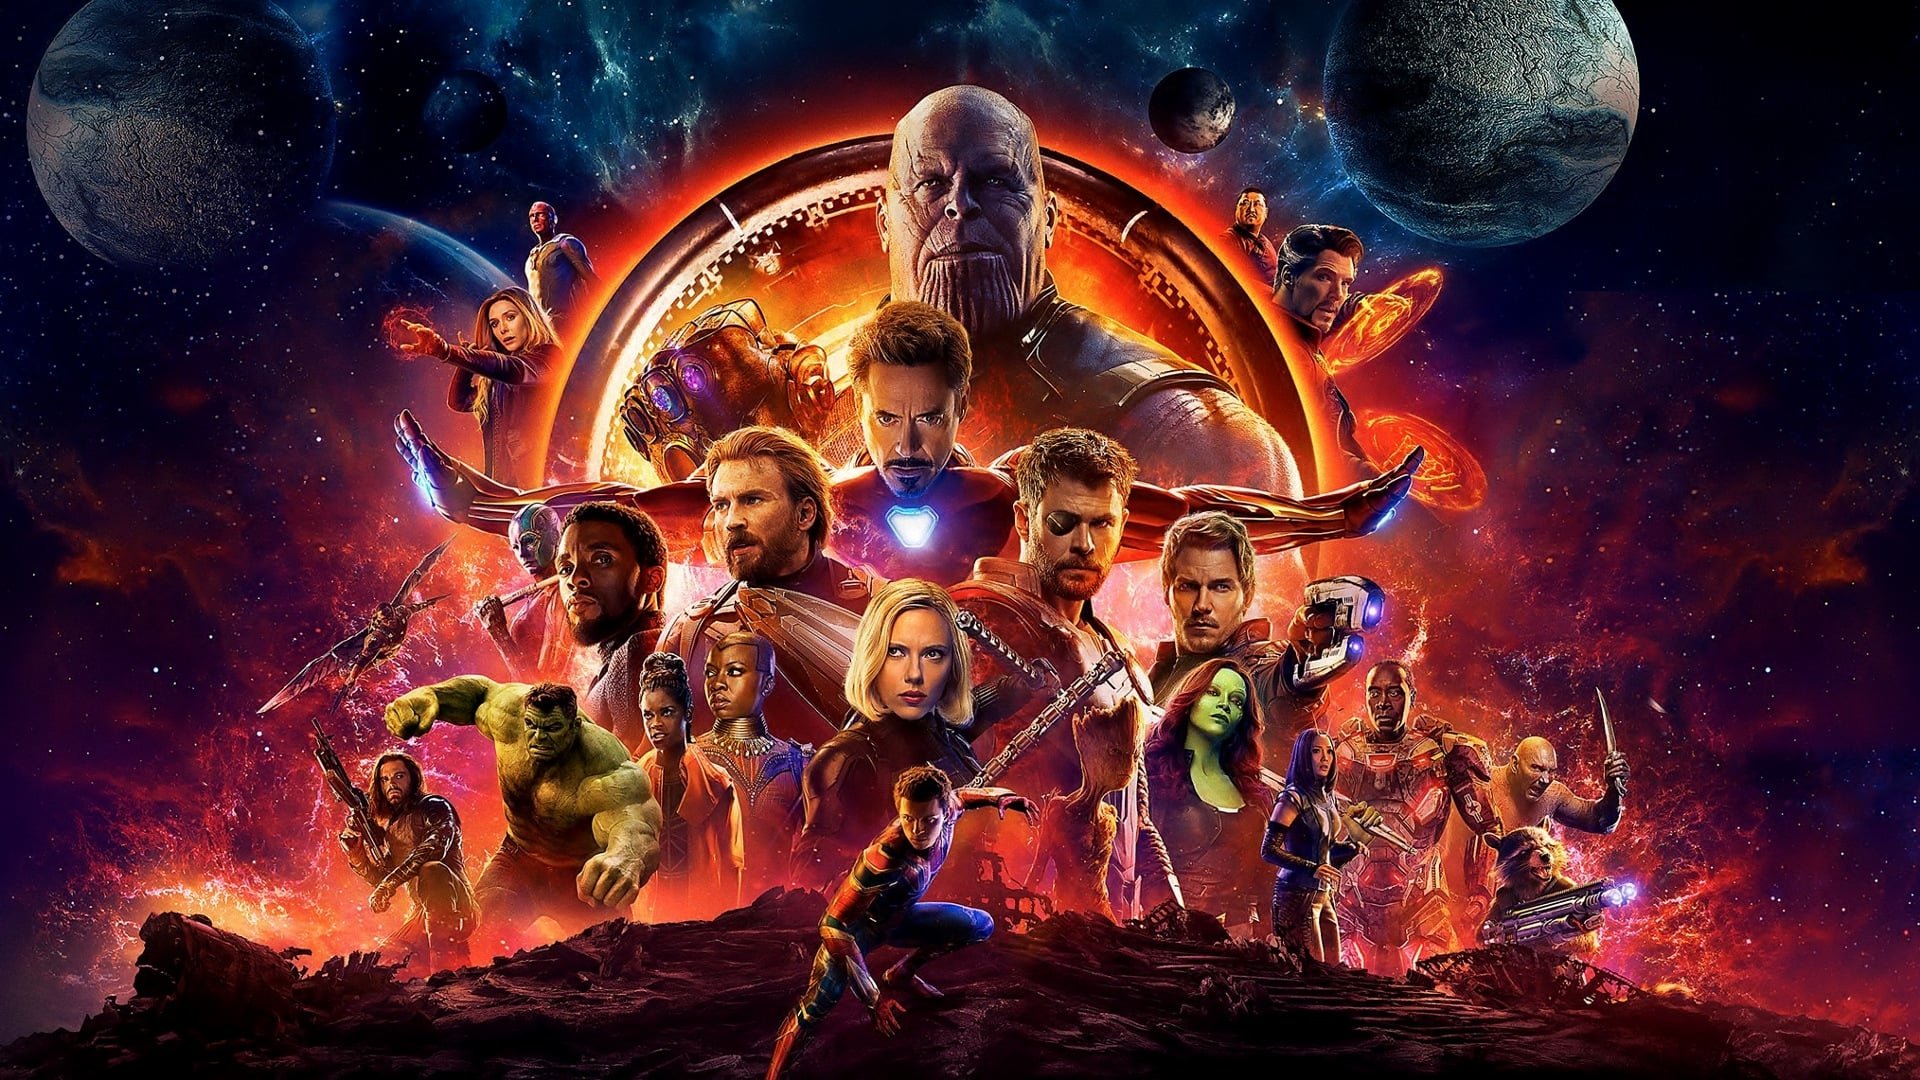 Avengers endgame movie poster - Avengers